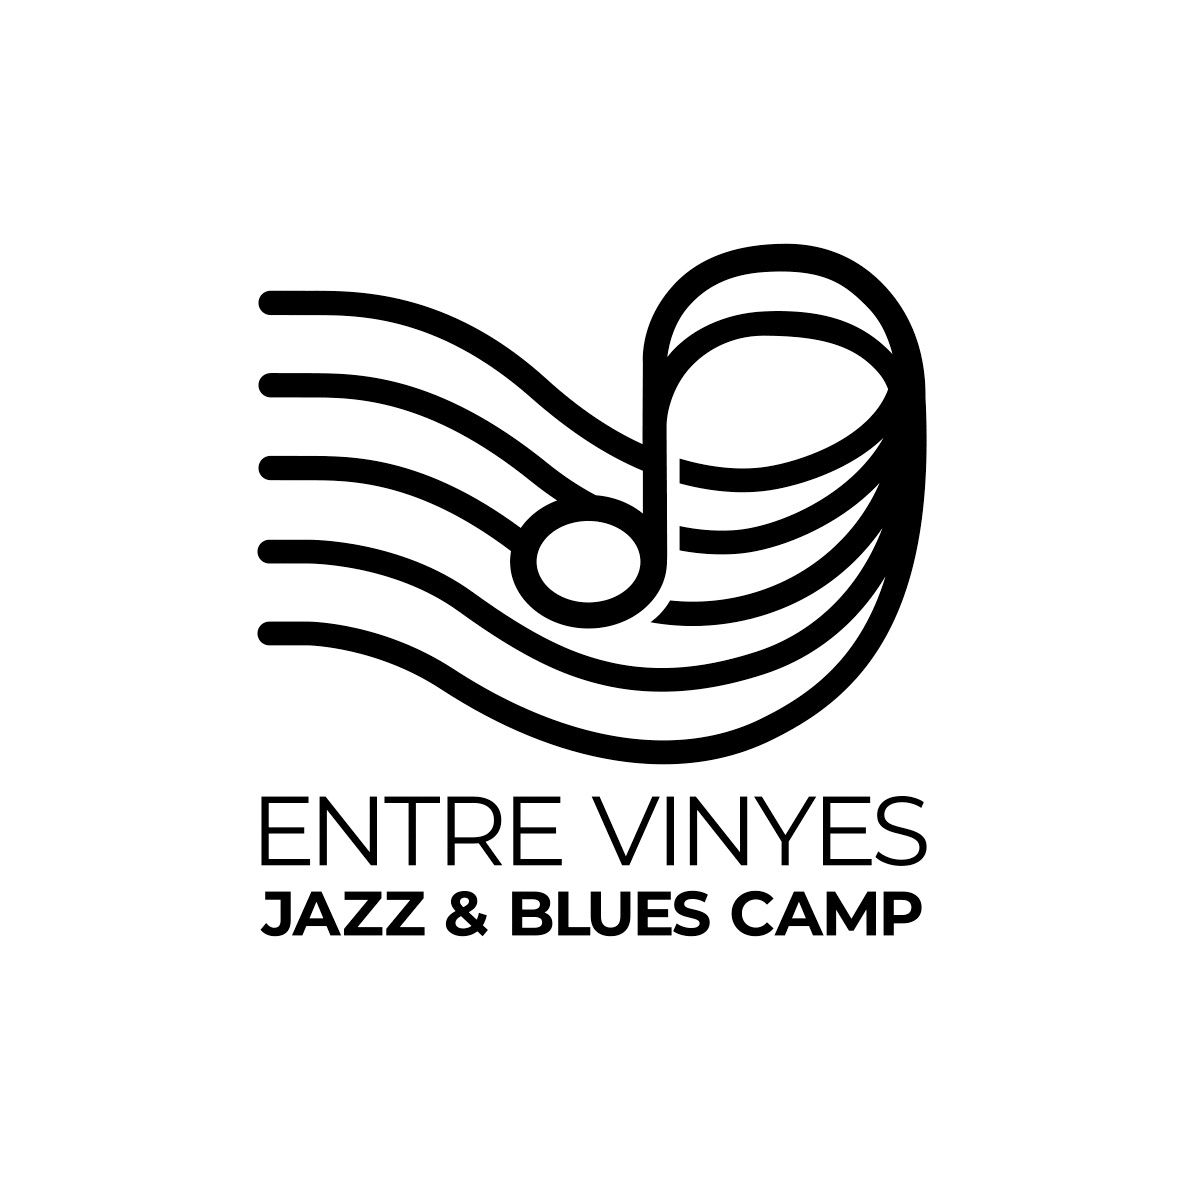 Entre Vinyes Jazz & Blues Camp